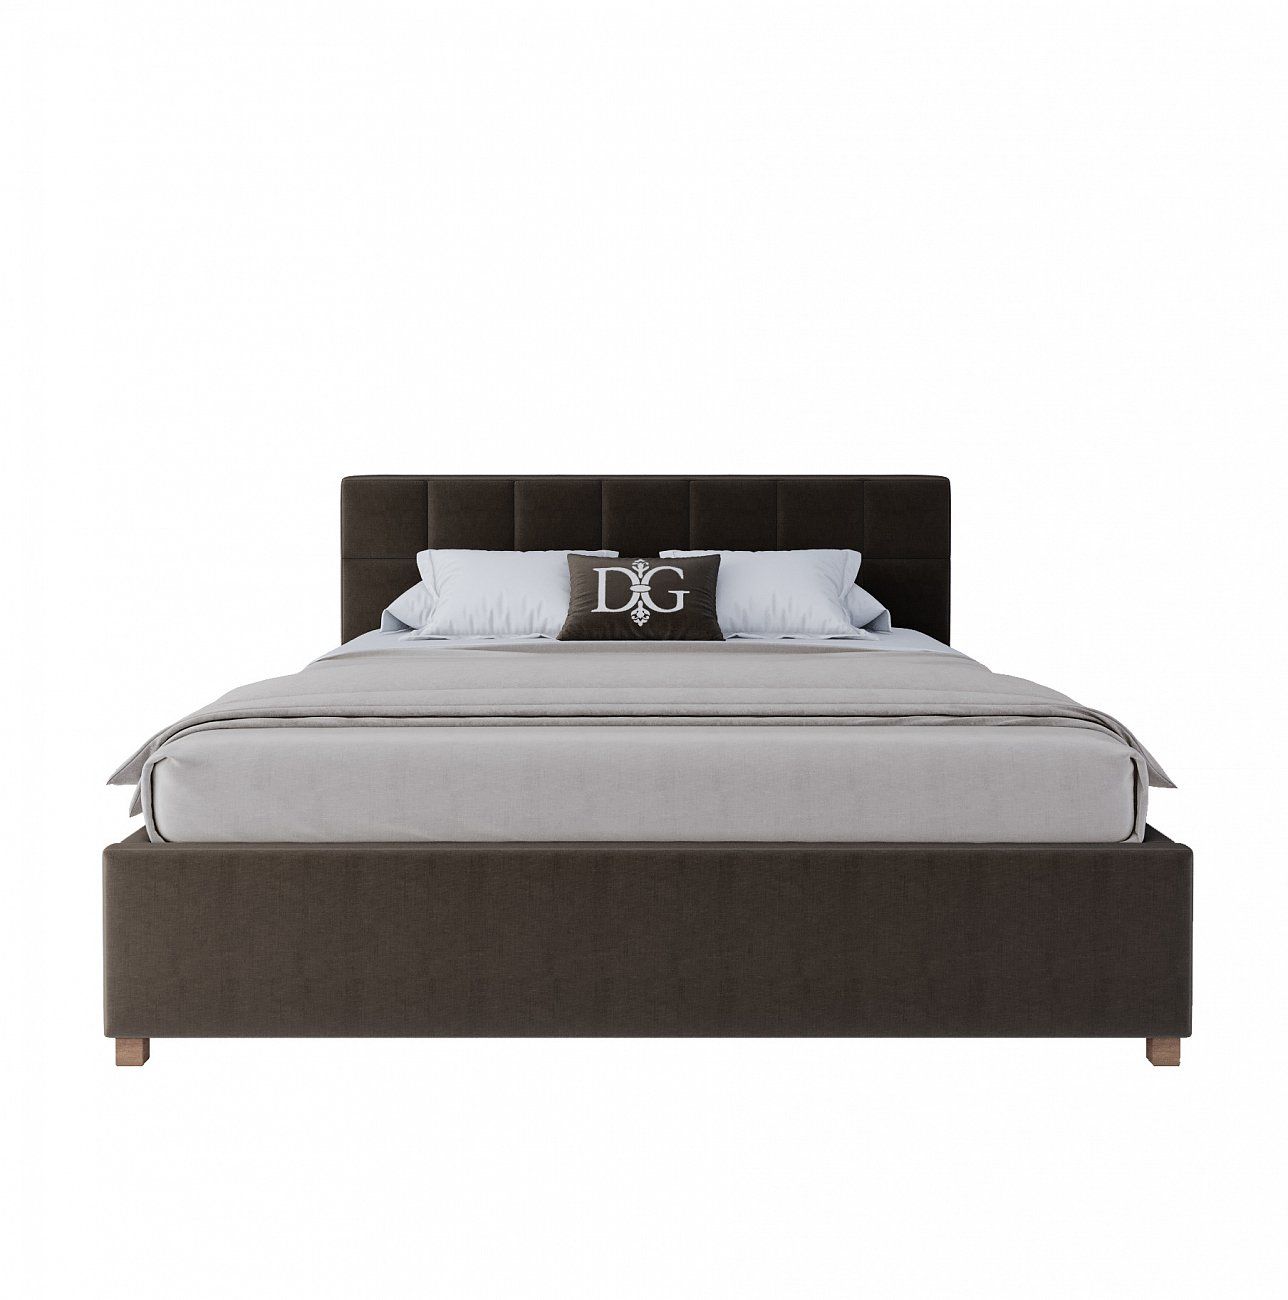 Кровать двуспальная 160х200 коричневая Wales